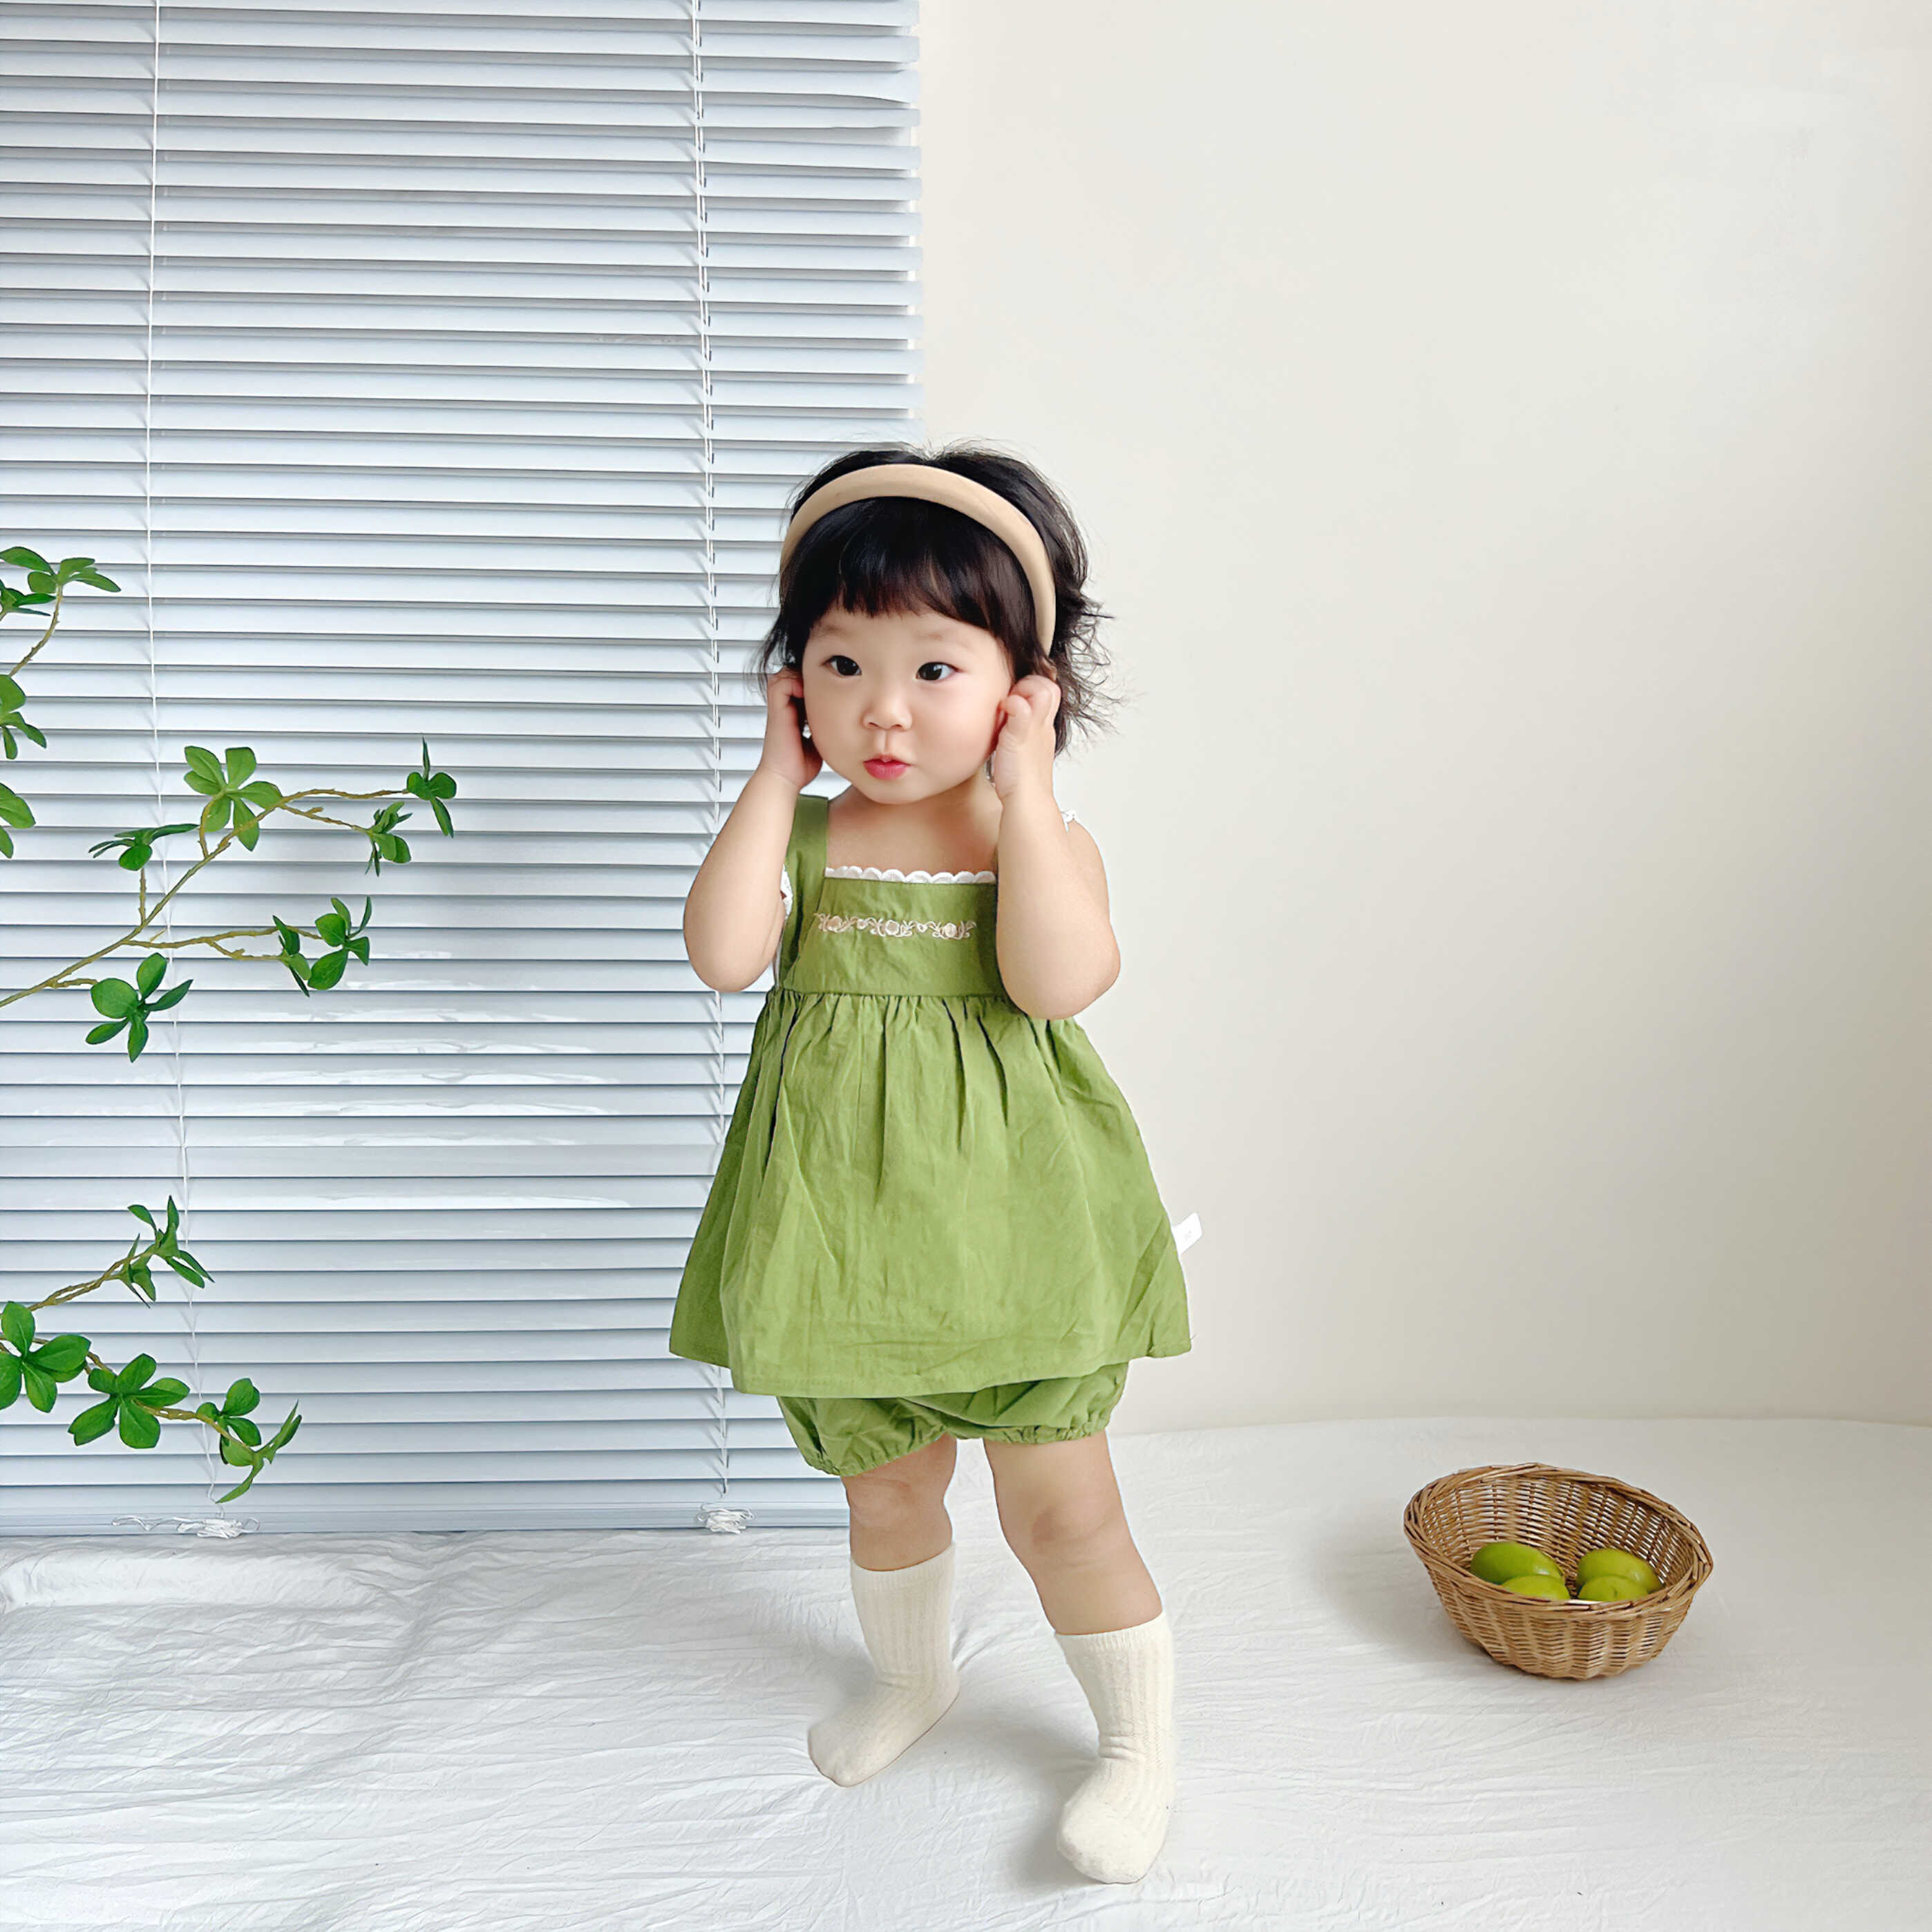 夏季婴儿衣服吊带背心裙套装韩版女宝宝绣花上衣短裤洋气百天两件